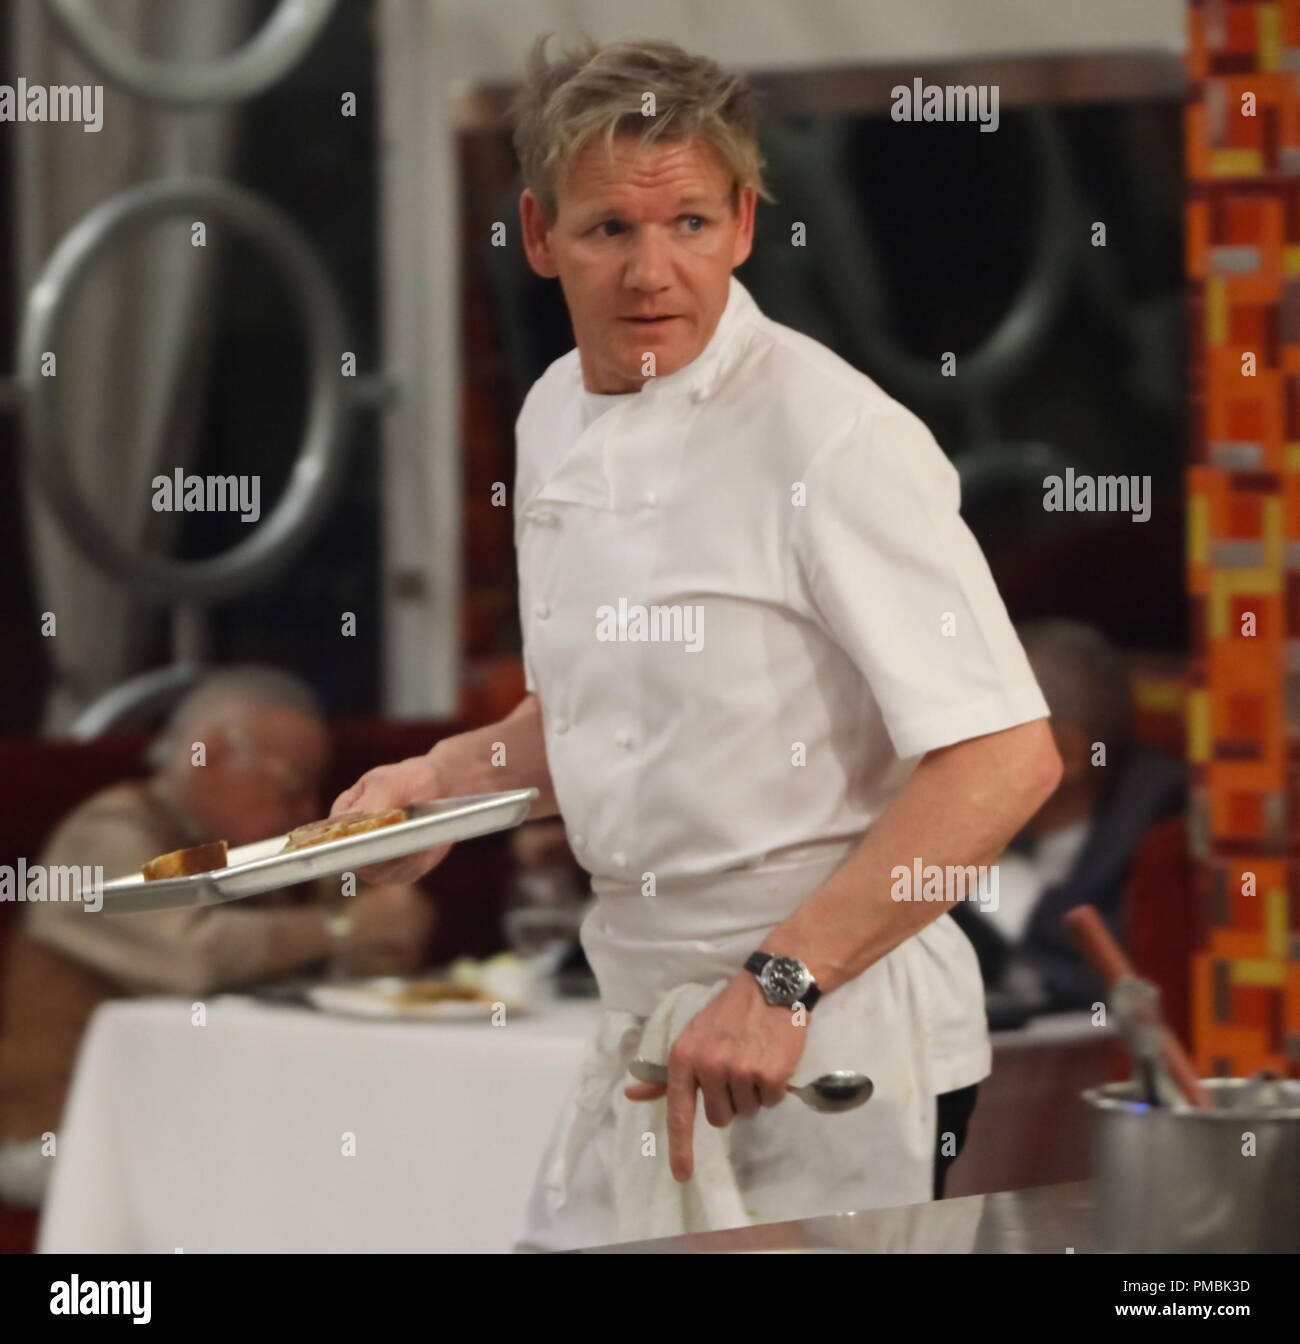 HELL'S KITCHEN: Chef Ramsay durante il servizio di cena in '5 chef competere' episodio di Hell's Kitchen Foto Stock